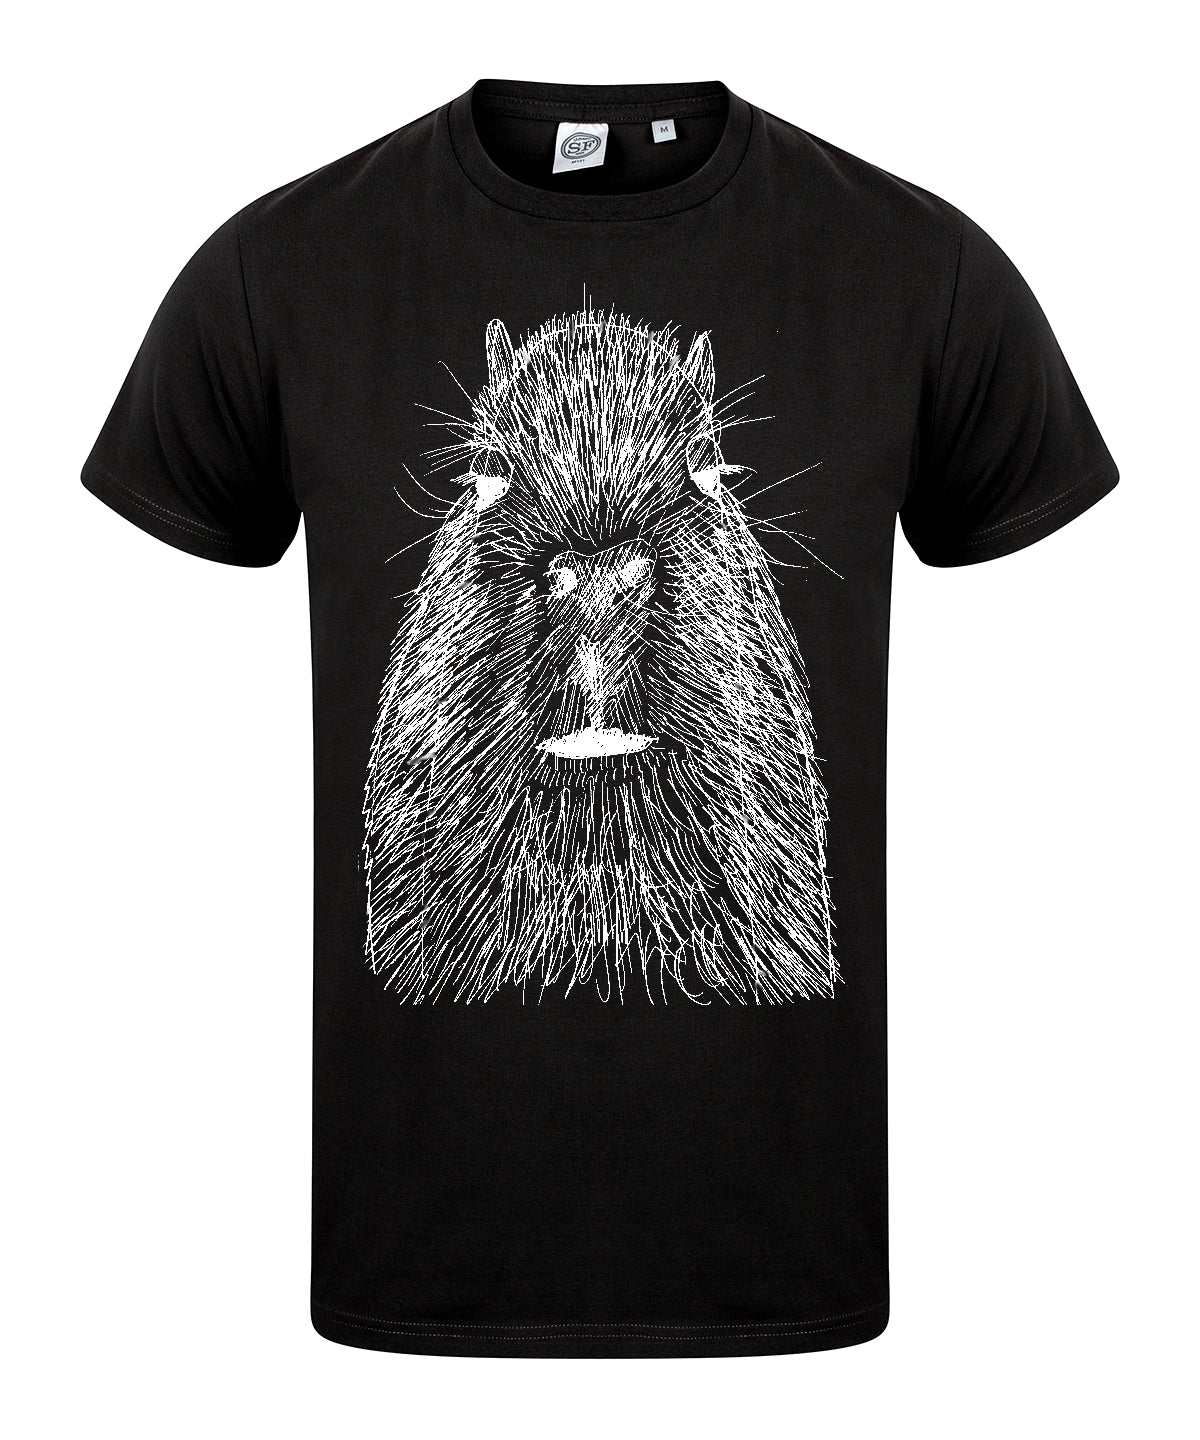 Capybara men t-shirt